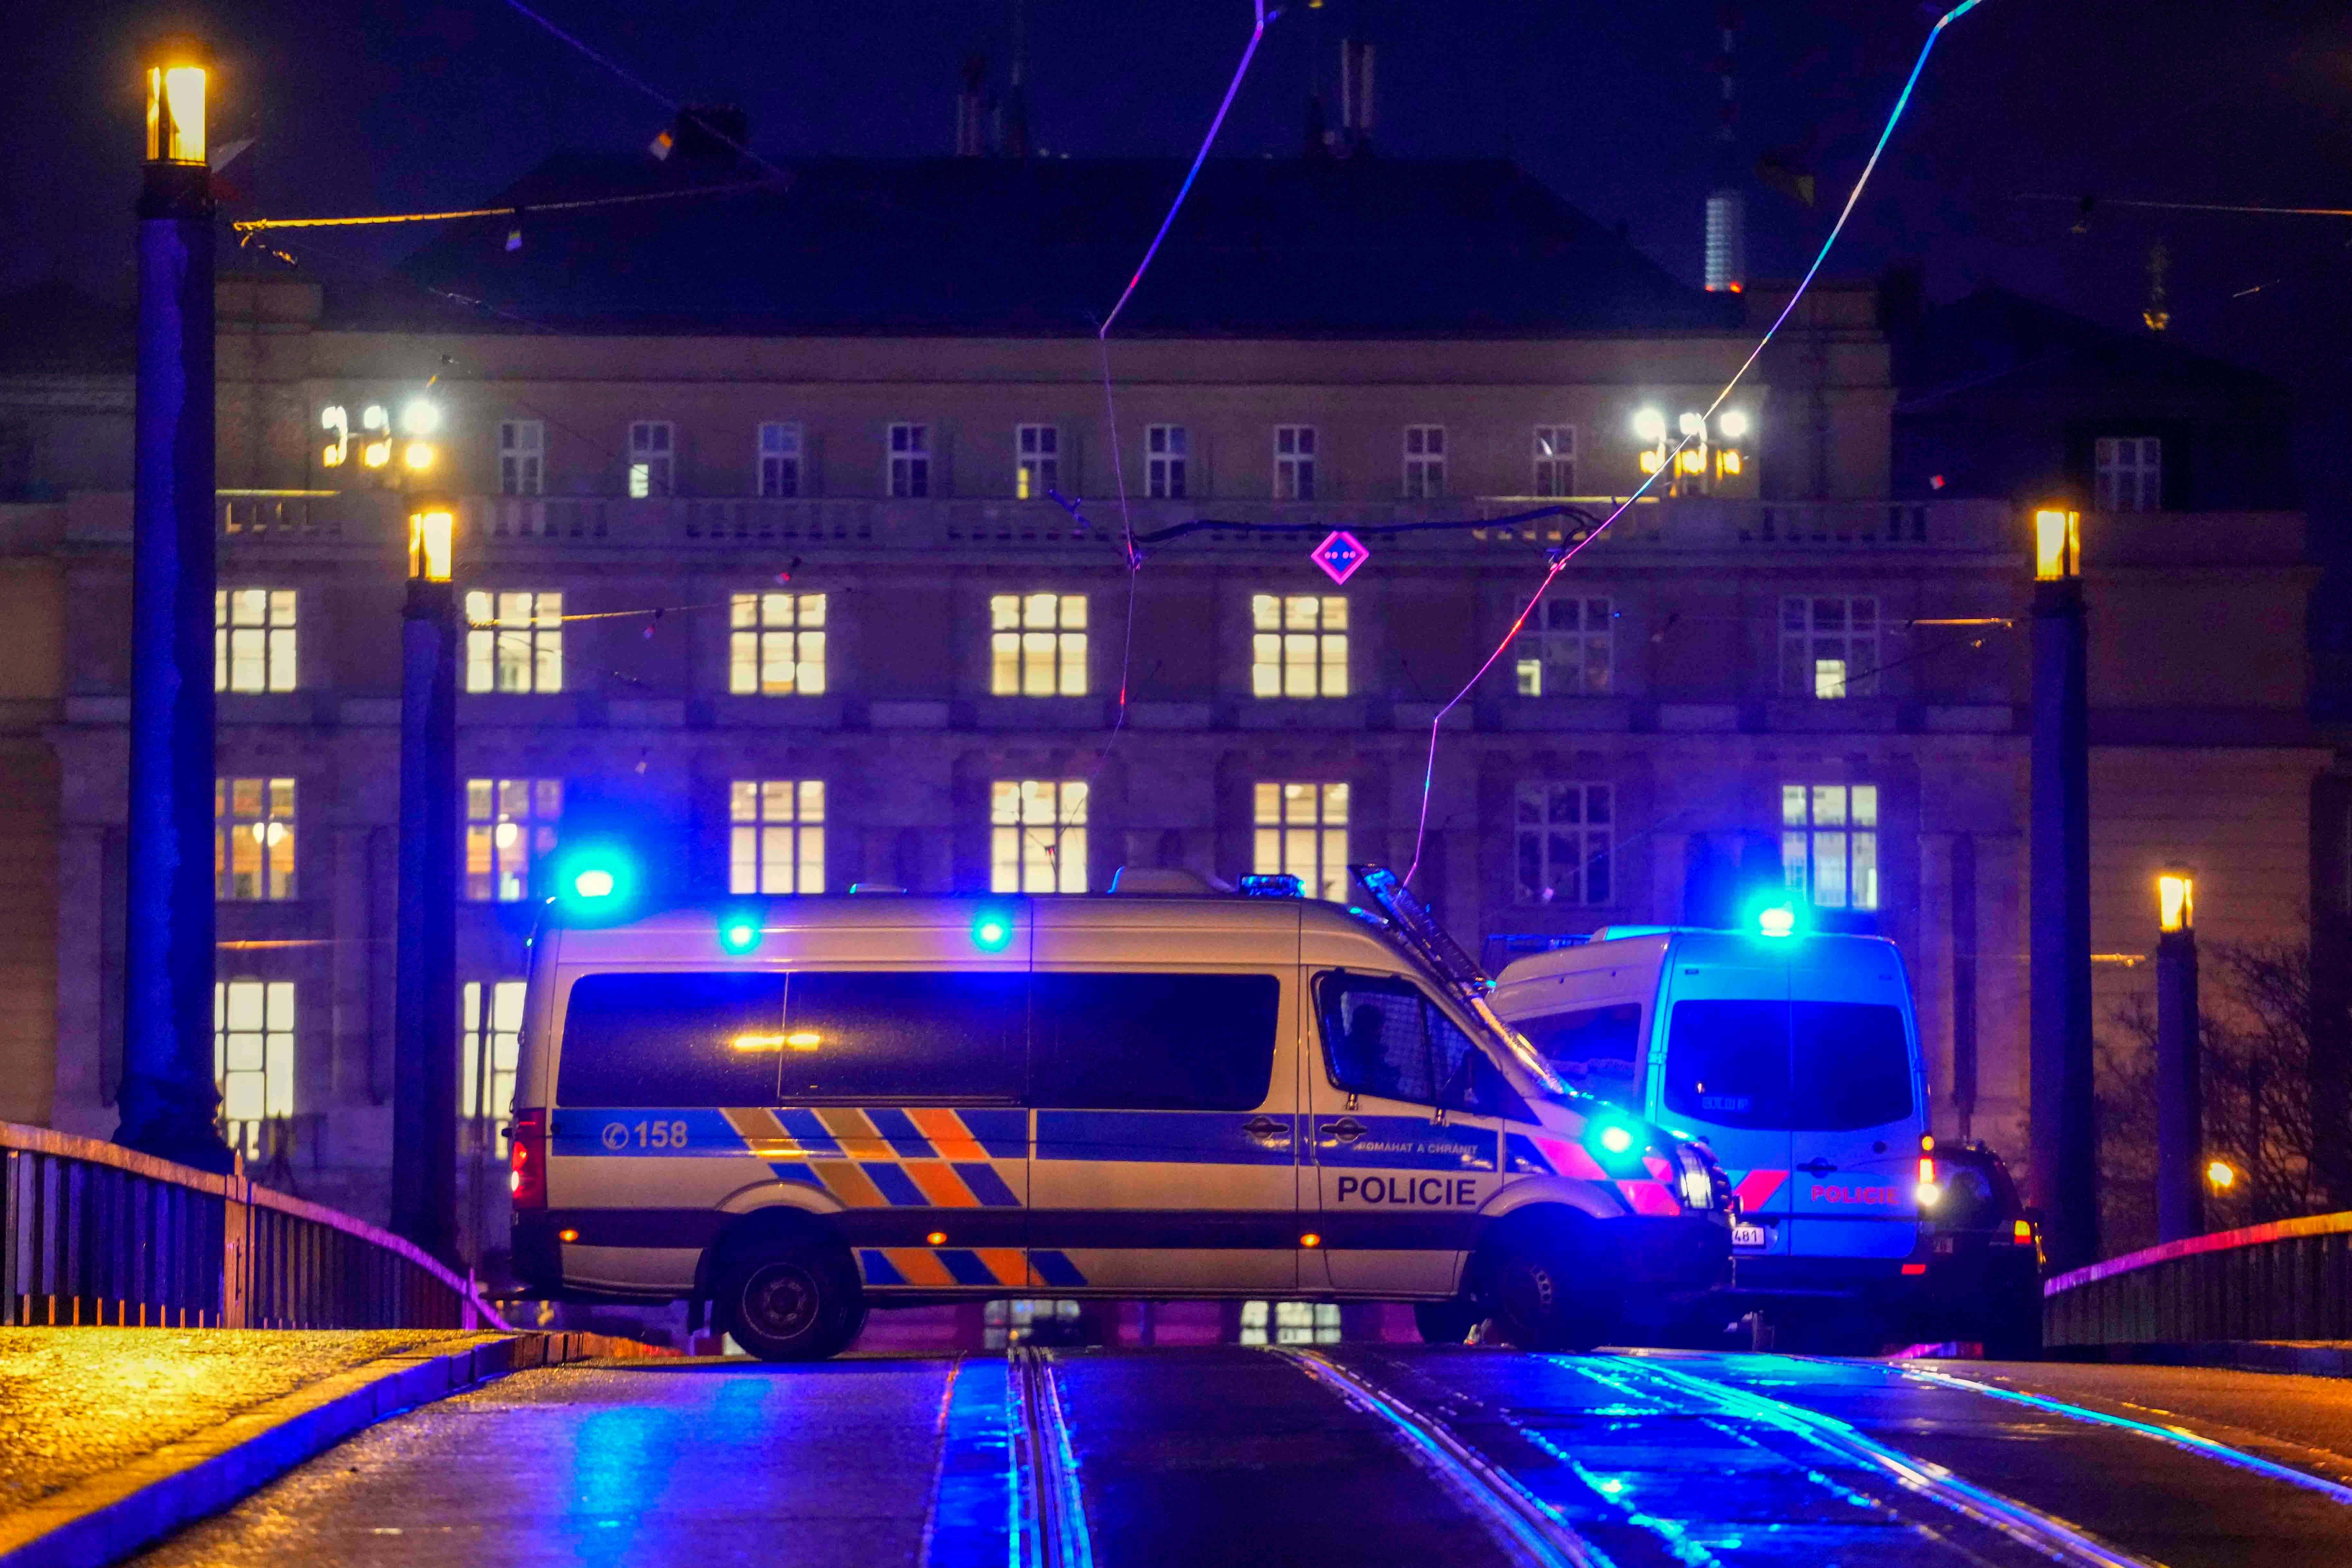 A police van blocks a bridge near the university